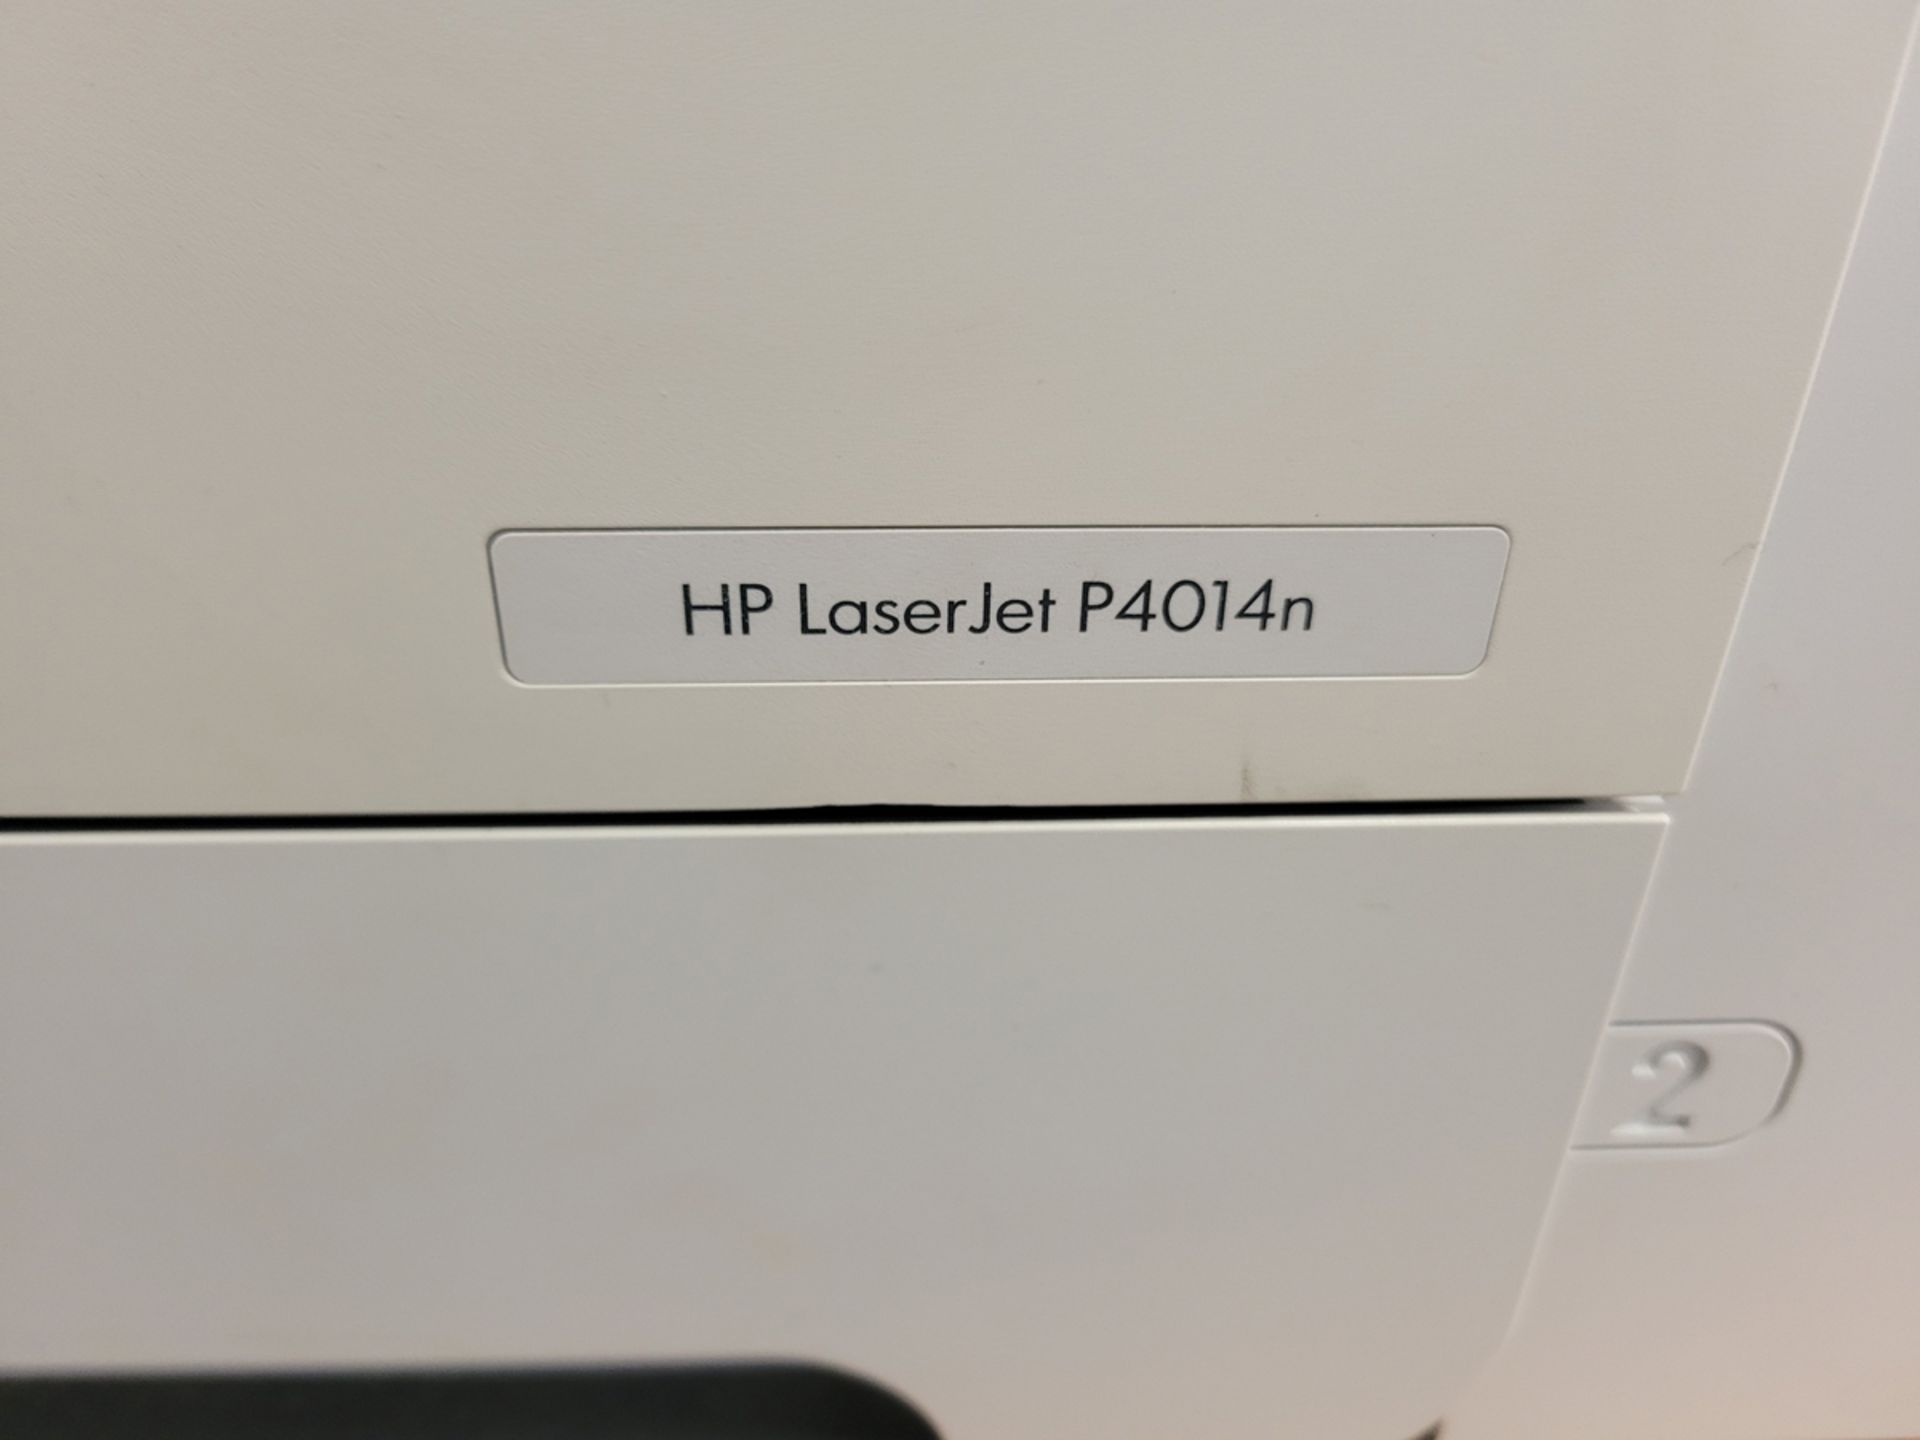 HP LaserJet P4014n Printer - Image 3 of 3